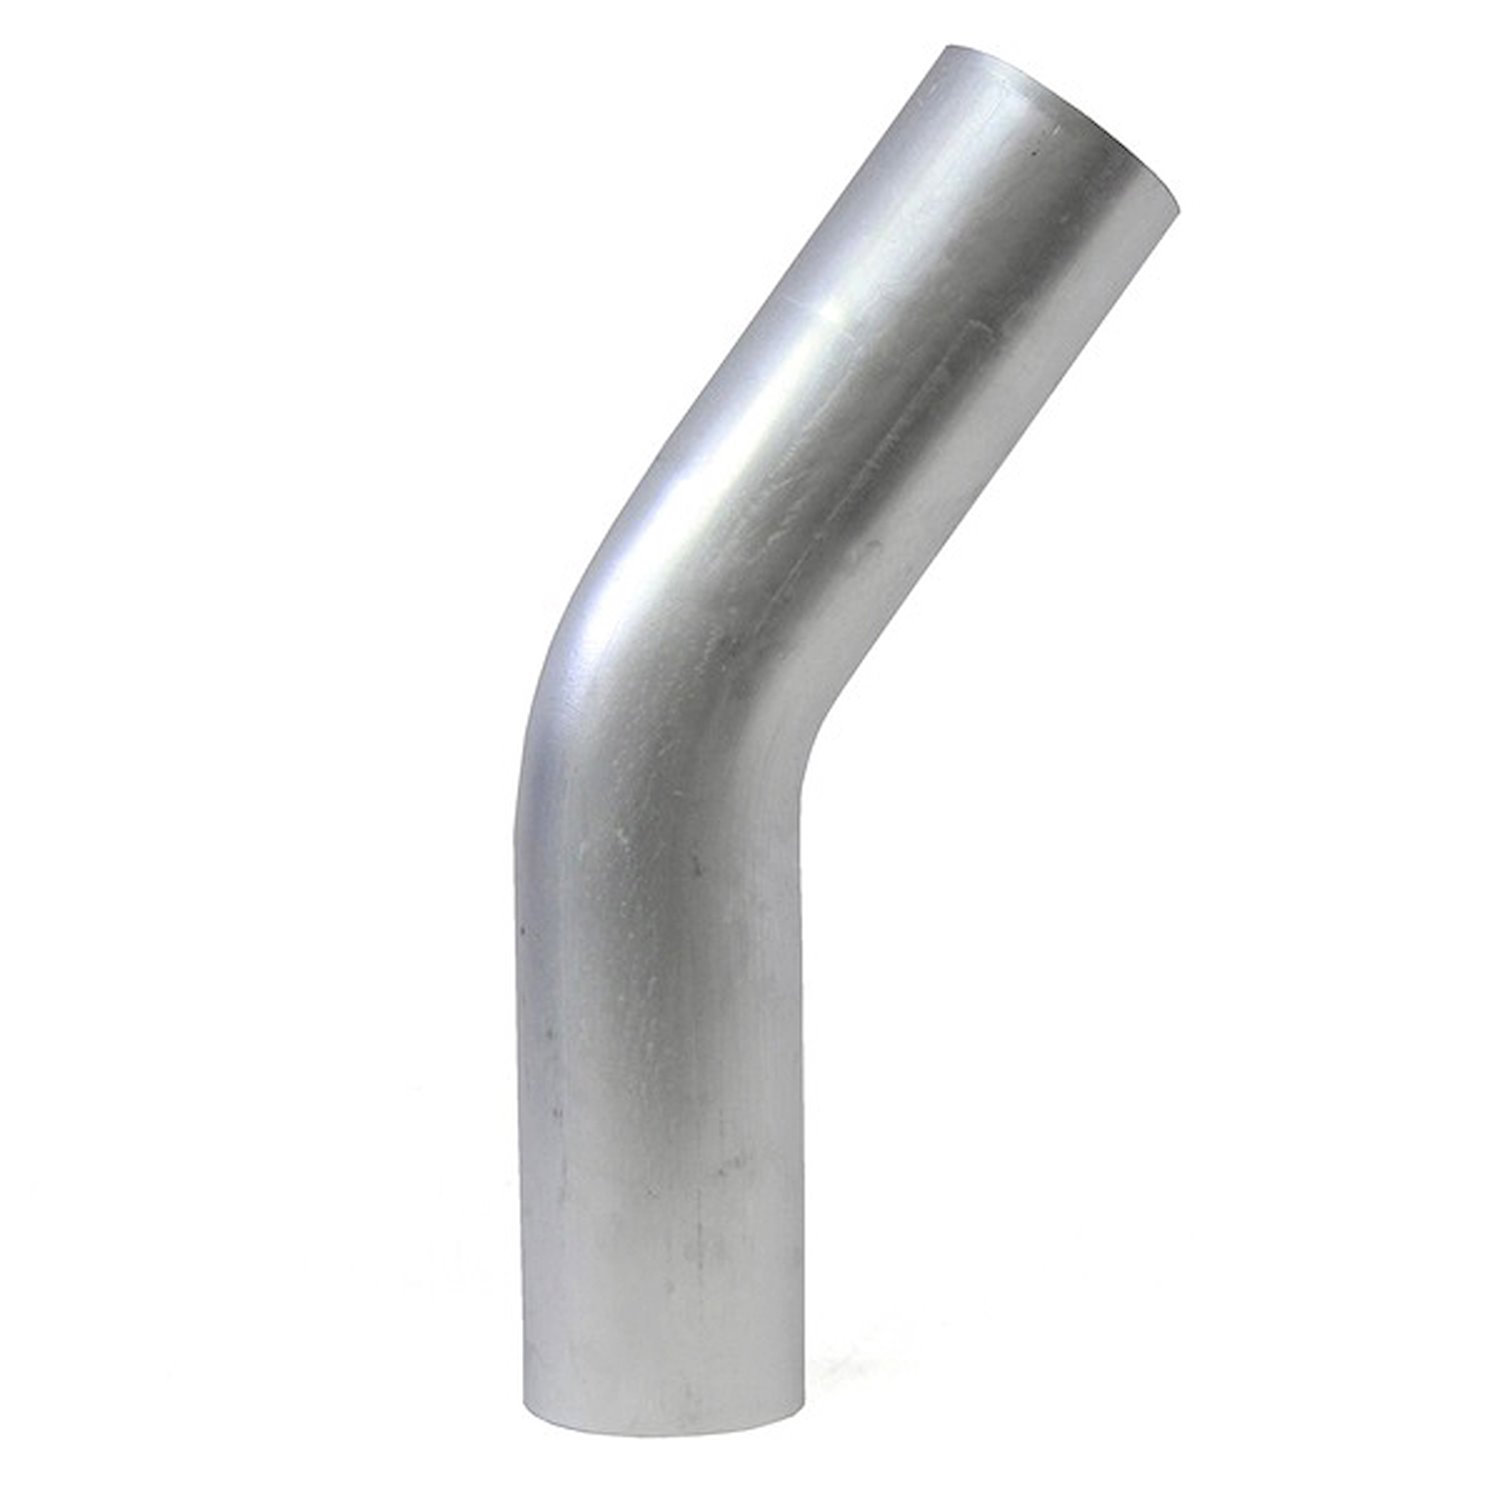 AT35-325-CLR-35 Aluminum Elbow Tube, 6061 Aluminum, 35-Degree Bend Elbow Tubing, 3-1/4 in. OD, Tight Radius, 3-1/2 in. CLR